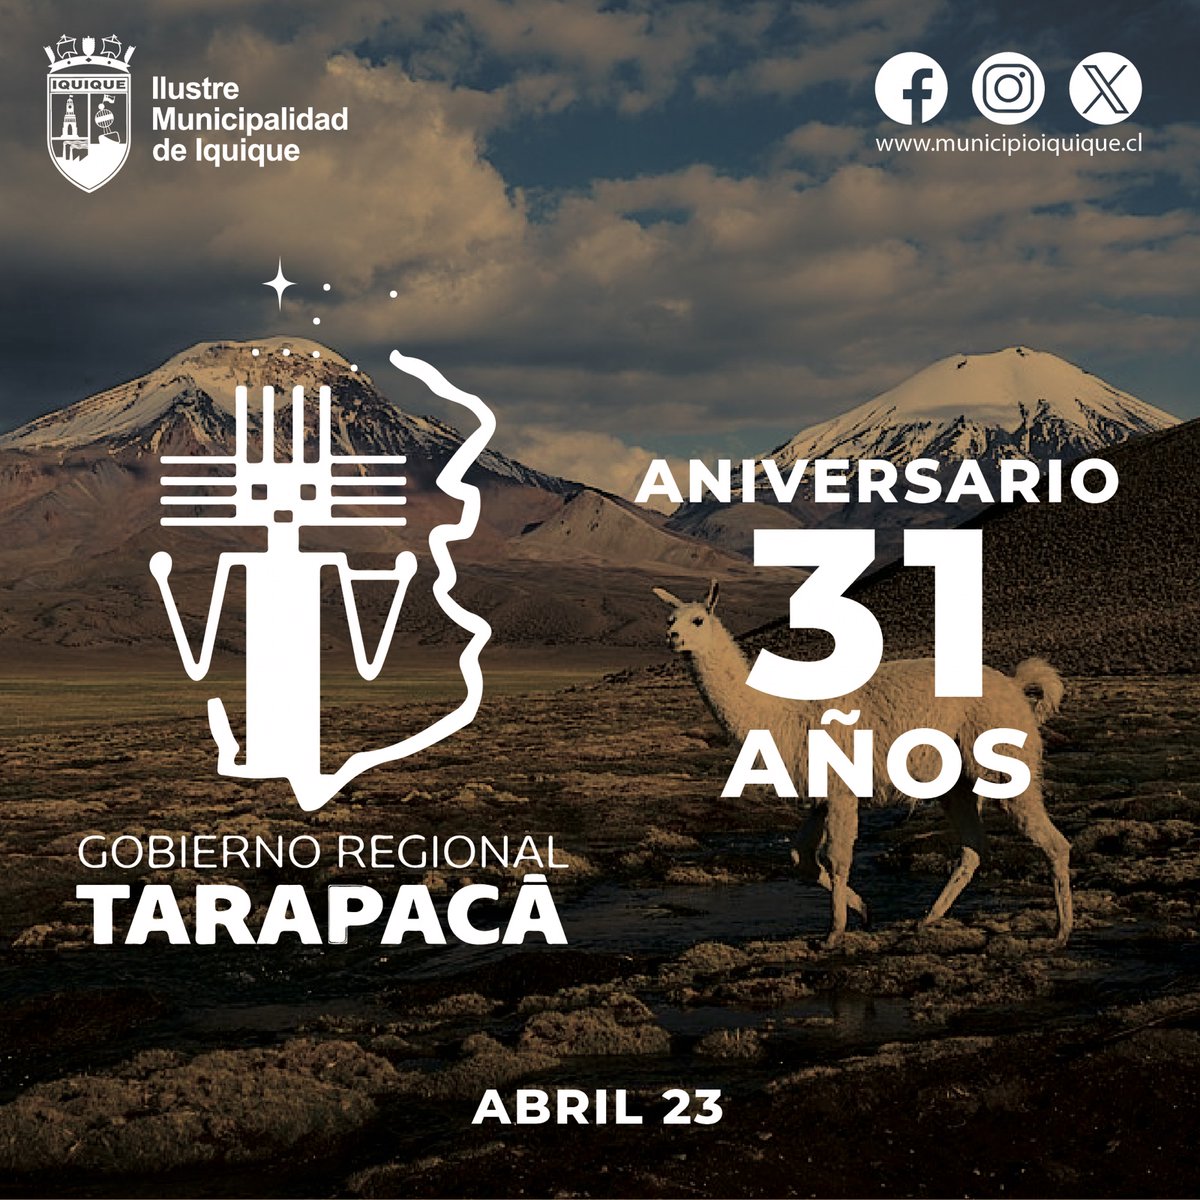 ¡¡FELIZ ANIVERSARIO @Gore_Tarapaca!!🎂💫 Hace 3️⃣1️⃣ años, nace esta institución que juega un rol fundamental en beneficio de las comunidades de #Tarapacá... Como @IquiqueDeTodos saludamos al Gobernador @JMCarvajalG y a todo su equipo en este nuevo aniversario… #Iquique